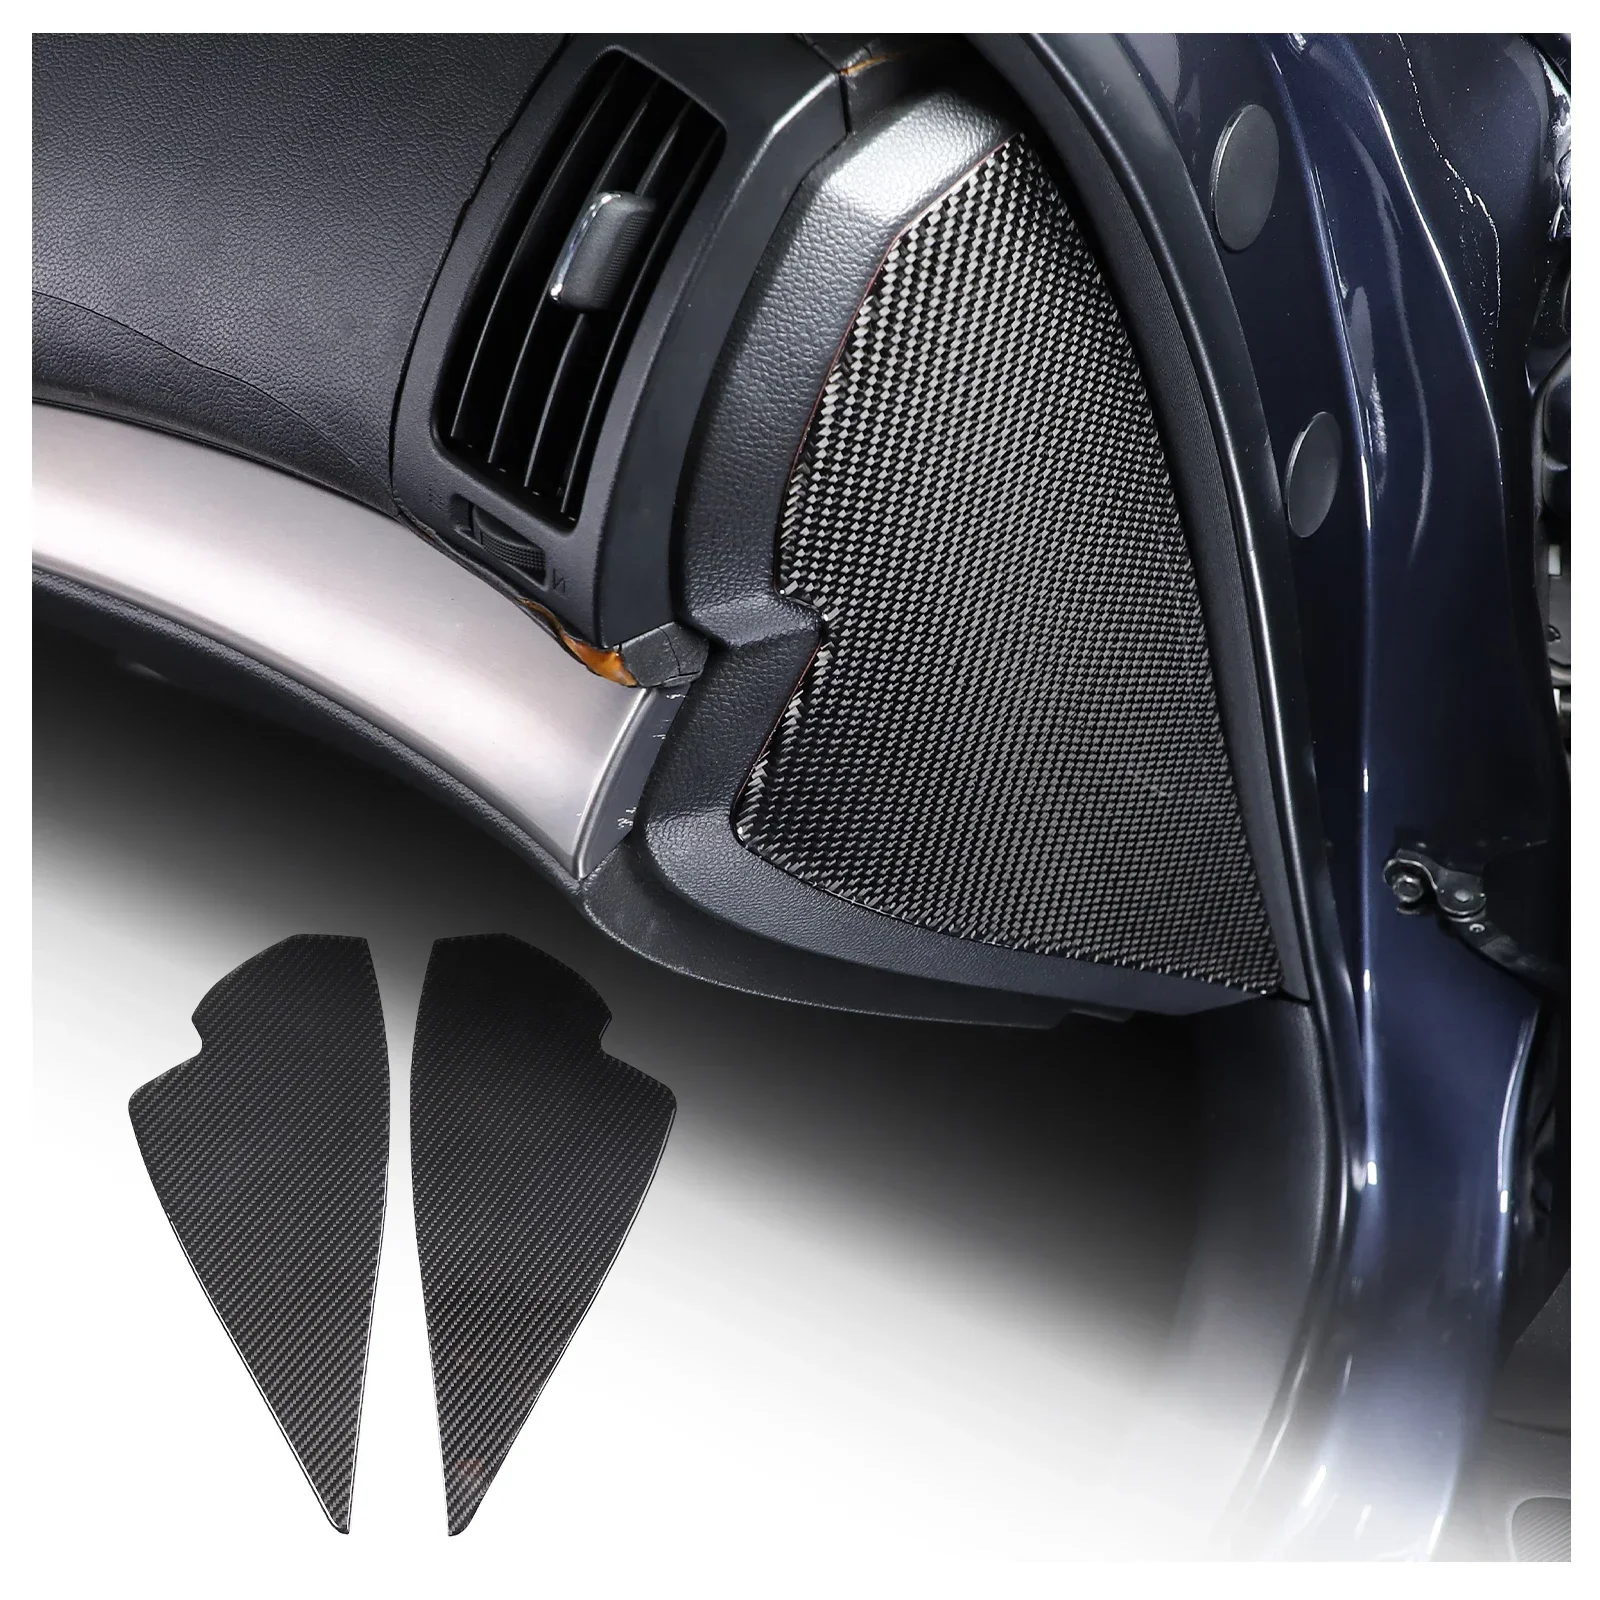  Мягкая панель из углеродного волокна Наклейки на буферную накладку для 2007-2013 Infiniti G25 G35 G37 Автомобильные аксессуары - 0